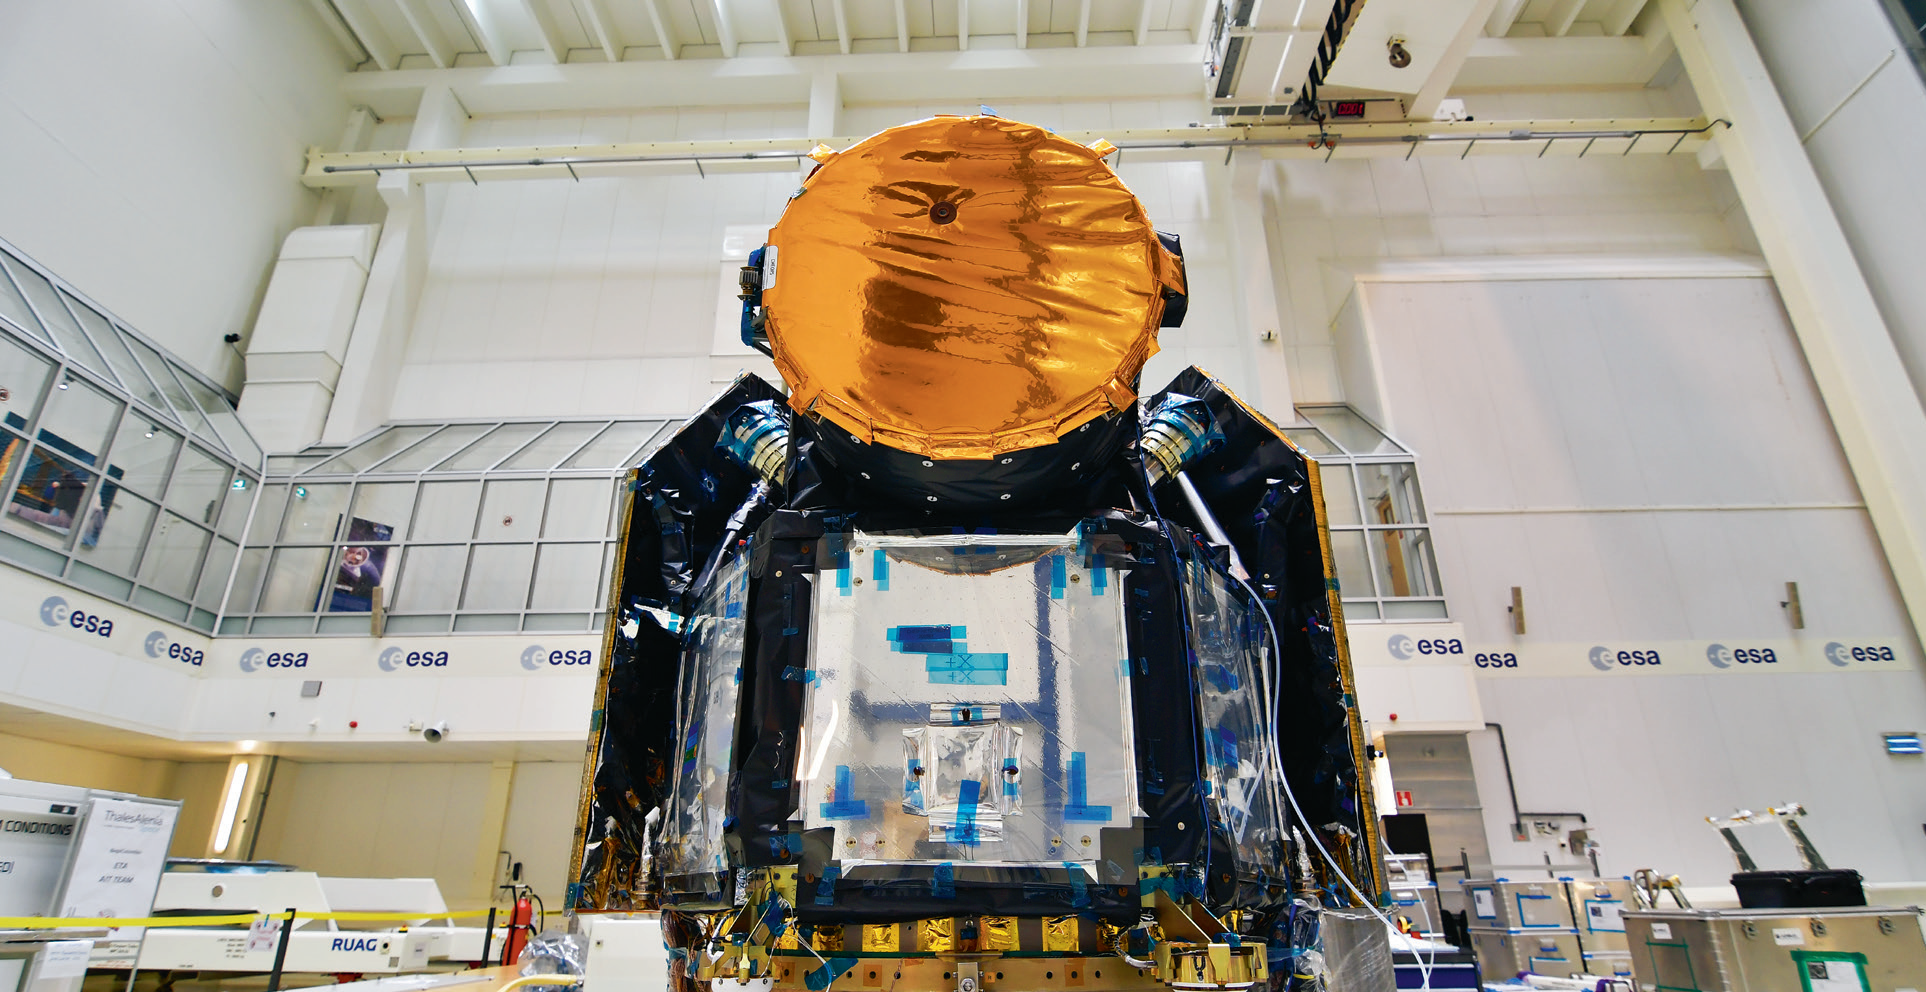 Satelita Cheops ma poszukiwać życia poza Ziemią; laboratorium Europejskiej Agencji Kosmicznej, Holandia, wrzesień 2018r.